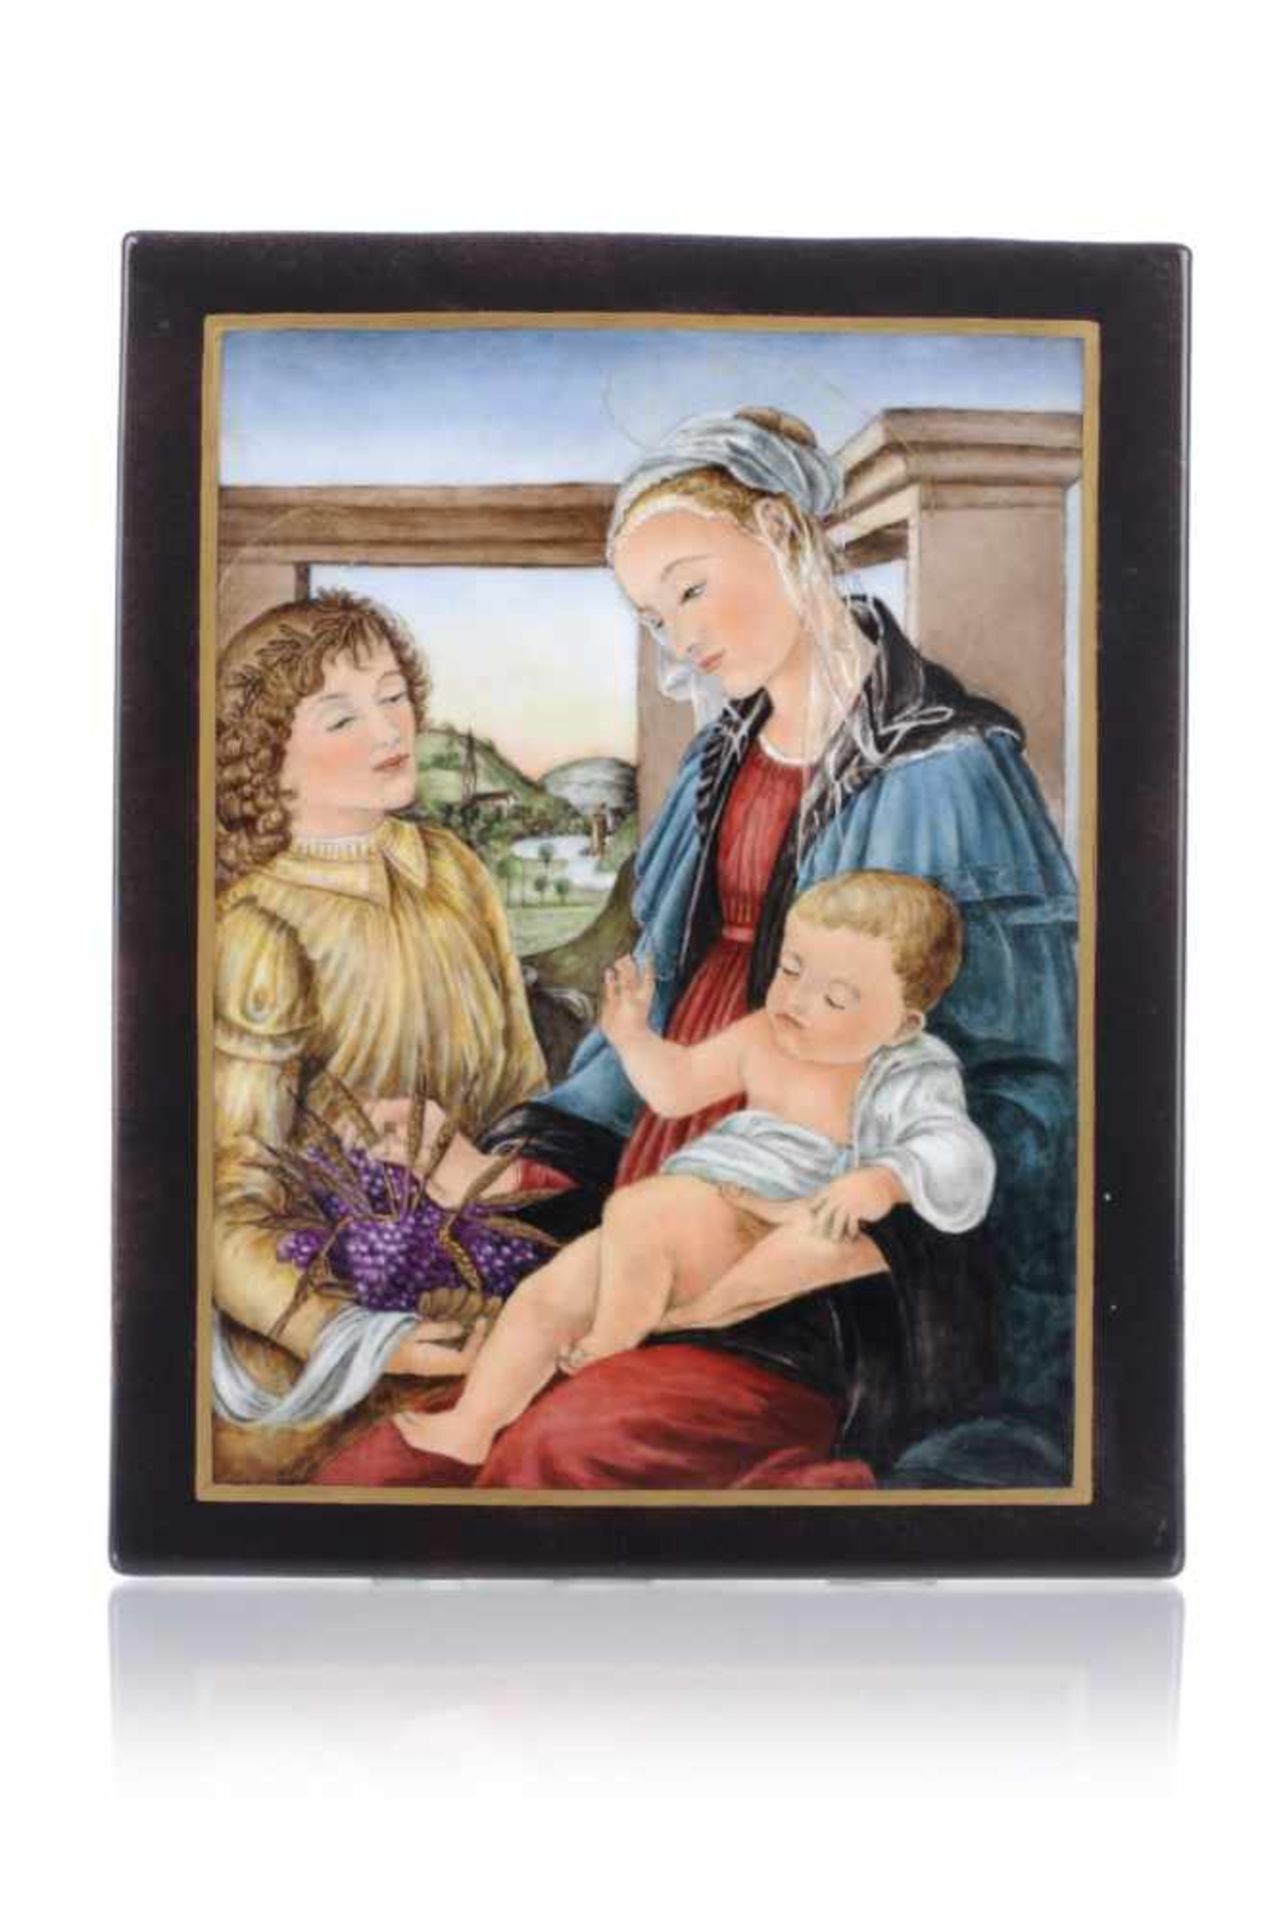 Bildplatte "Madonna der Eucharistie" nach Sandro Botticelli. Wohl spätes 19. Jh.Porzellan, glasiert,